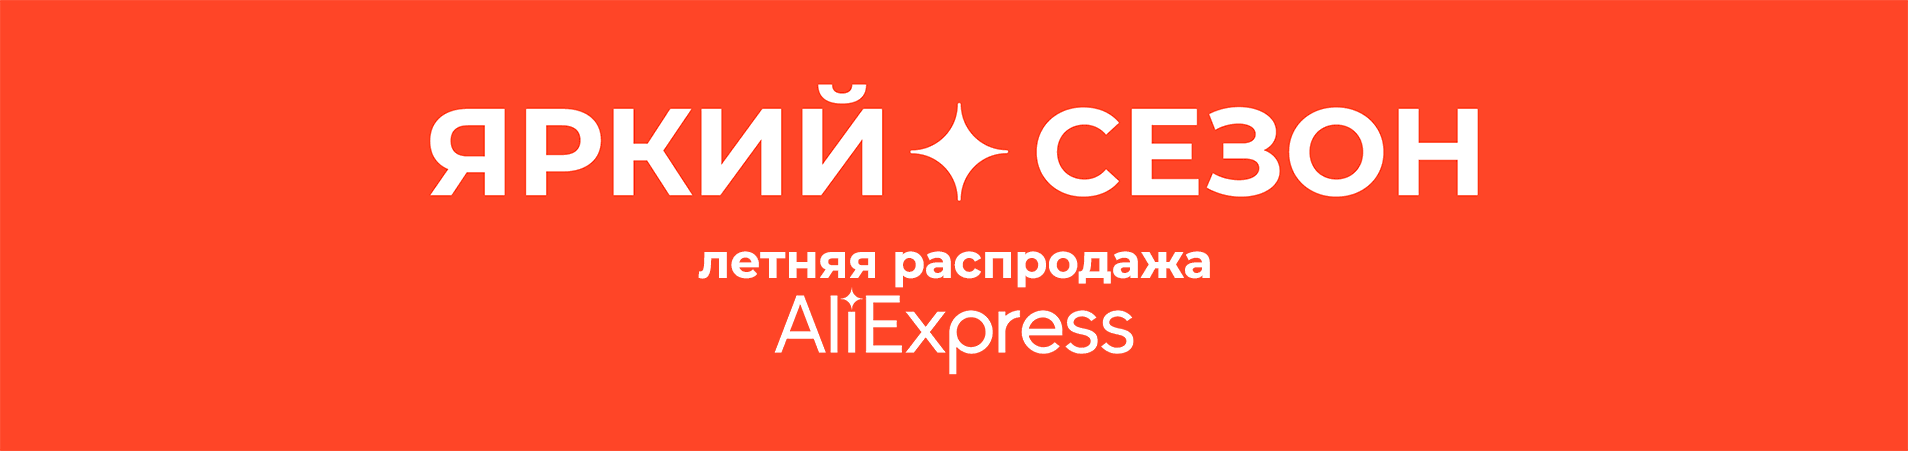 Летняя распродажа AliExpress «Яркий сезон» (июнь 2021)